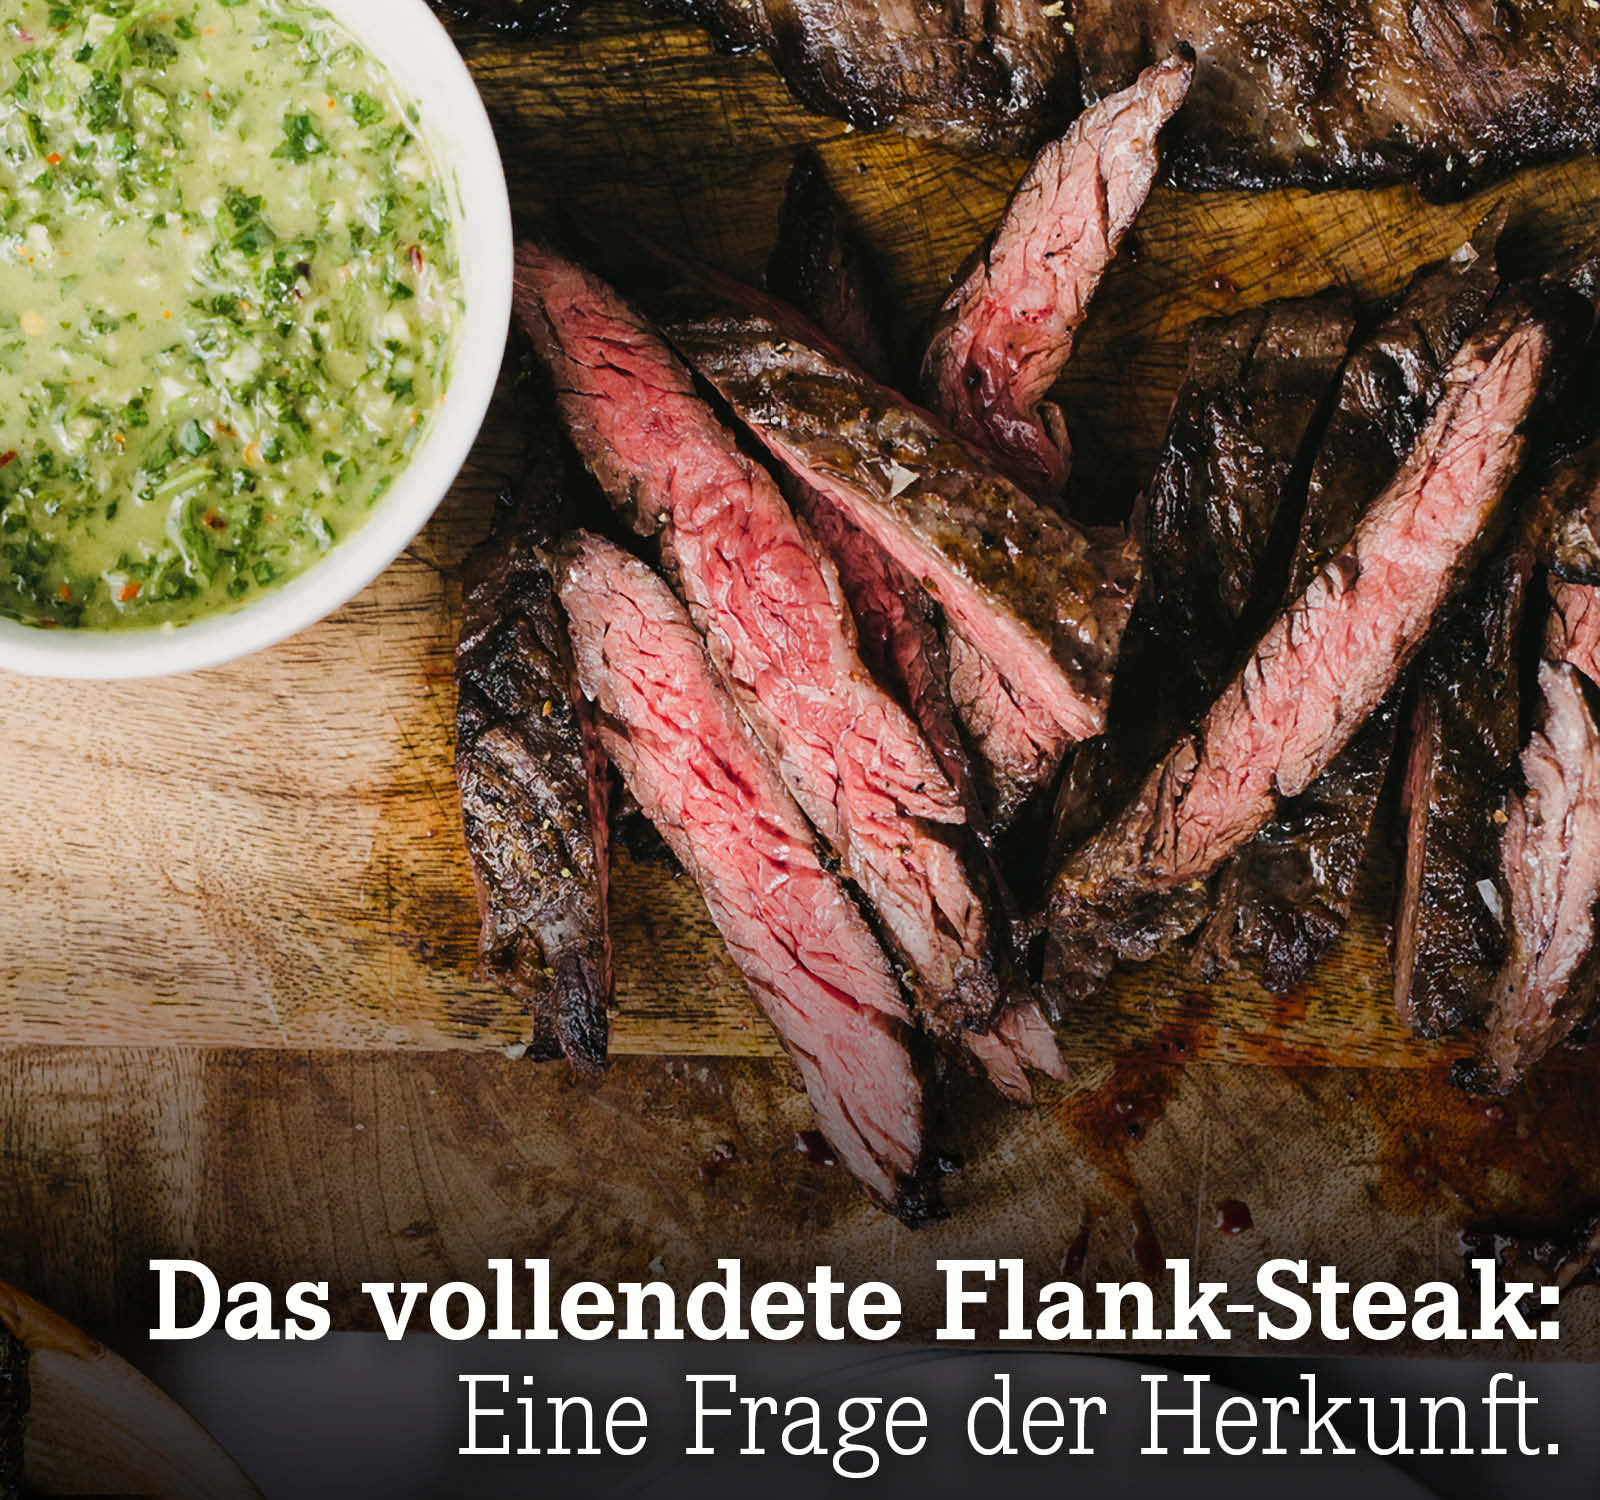 Das vollendete Flank-Steak: Eine Frage der Herkunft.